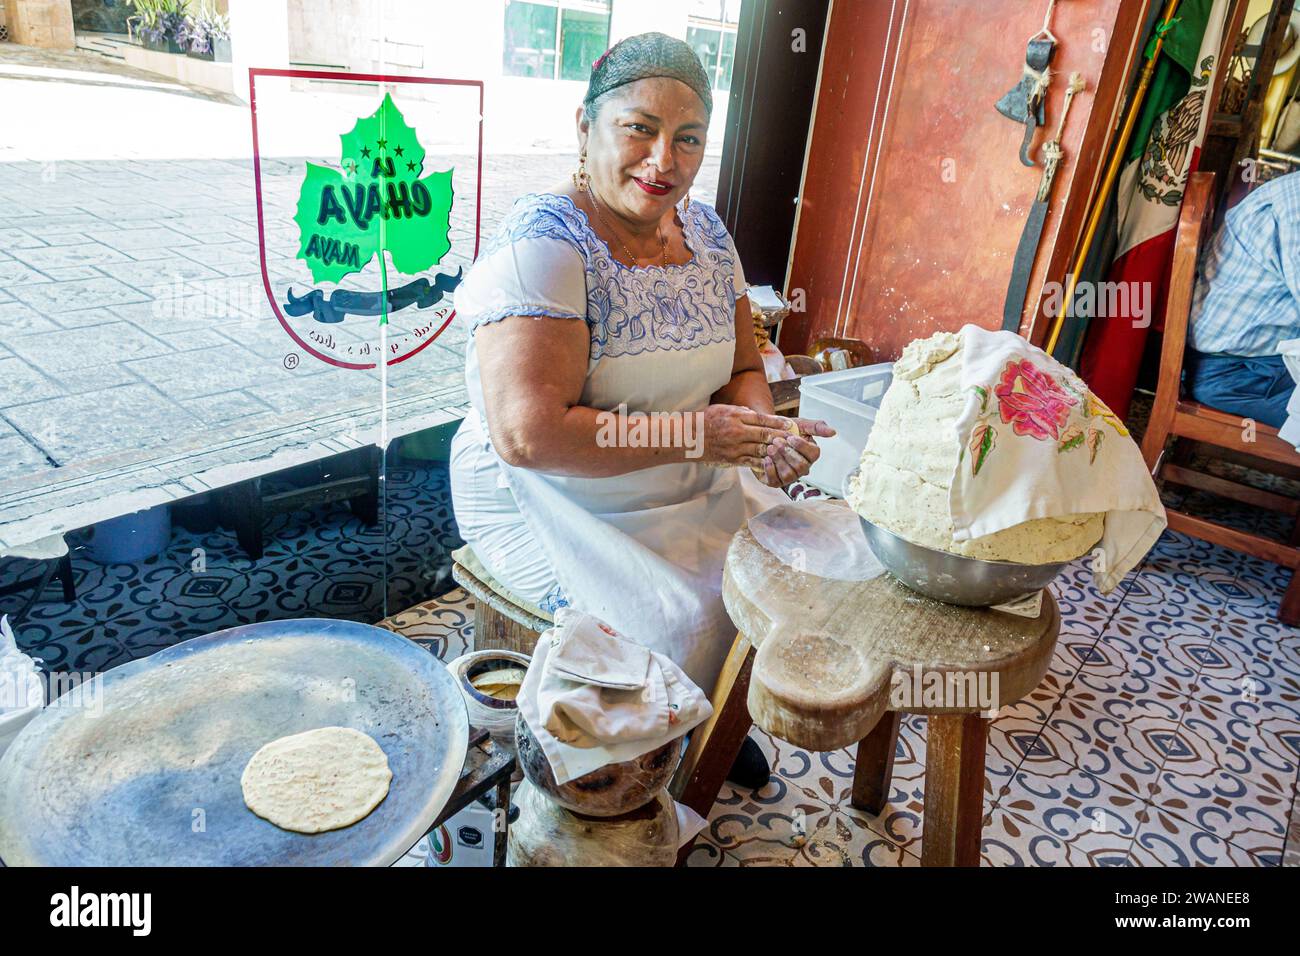 Merida Mexico, centro storico, quartiere storico centrale, dimostrazione di produzione di tortillas, la Chaya Maya, cibo Yucateca, donna donna donna donna donna donna donna, adulto, resi Foto Stock